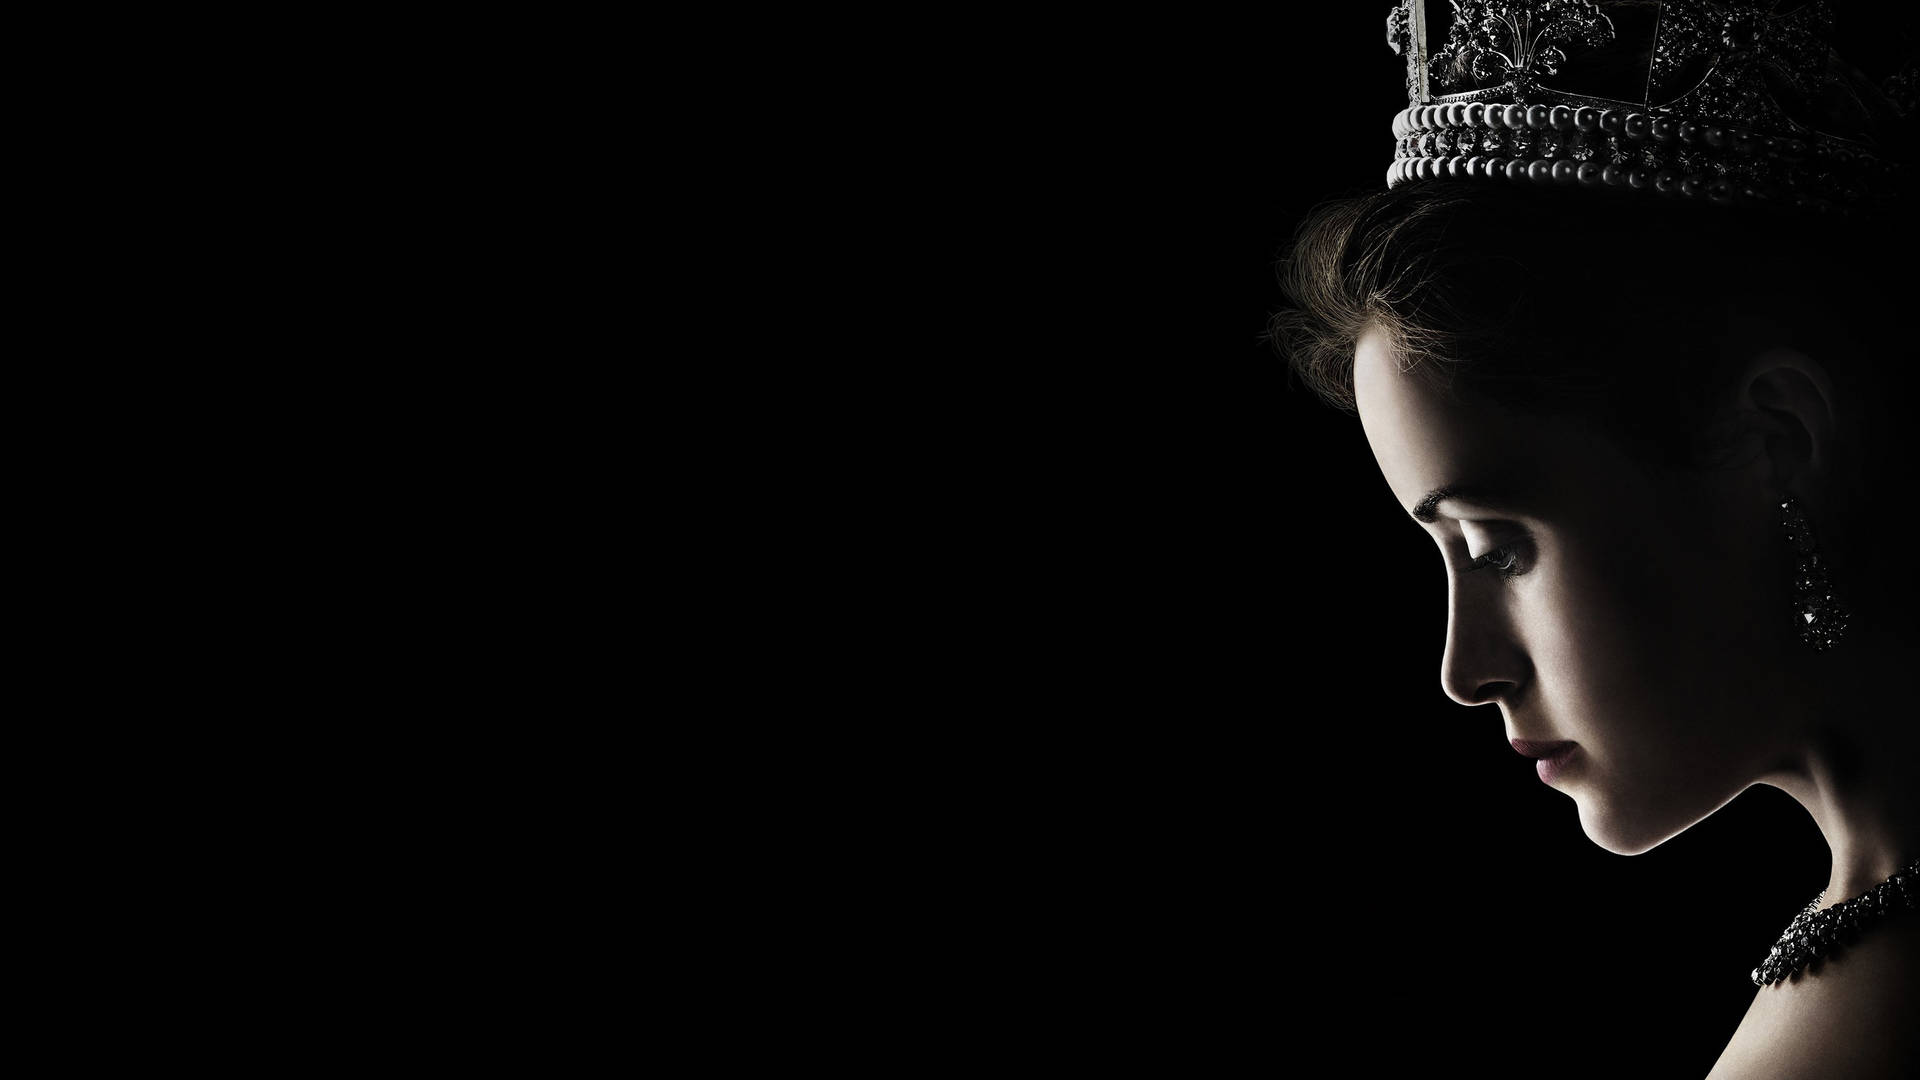 Derkronen Hintergrund Der Königin Elizabeth In Schwarz Wallpaper